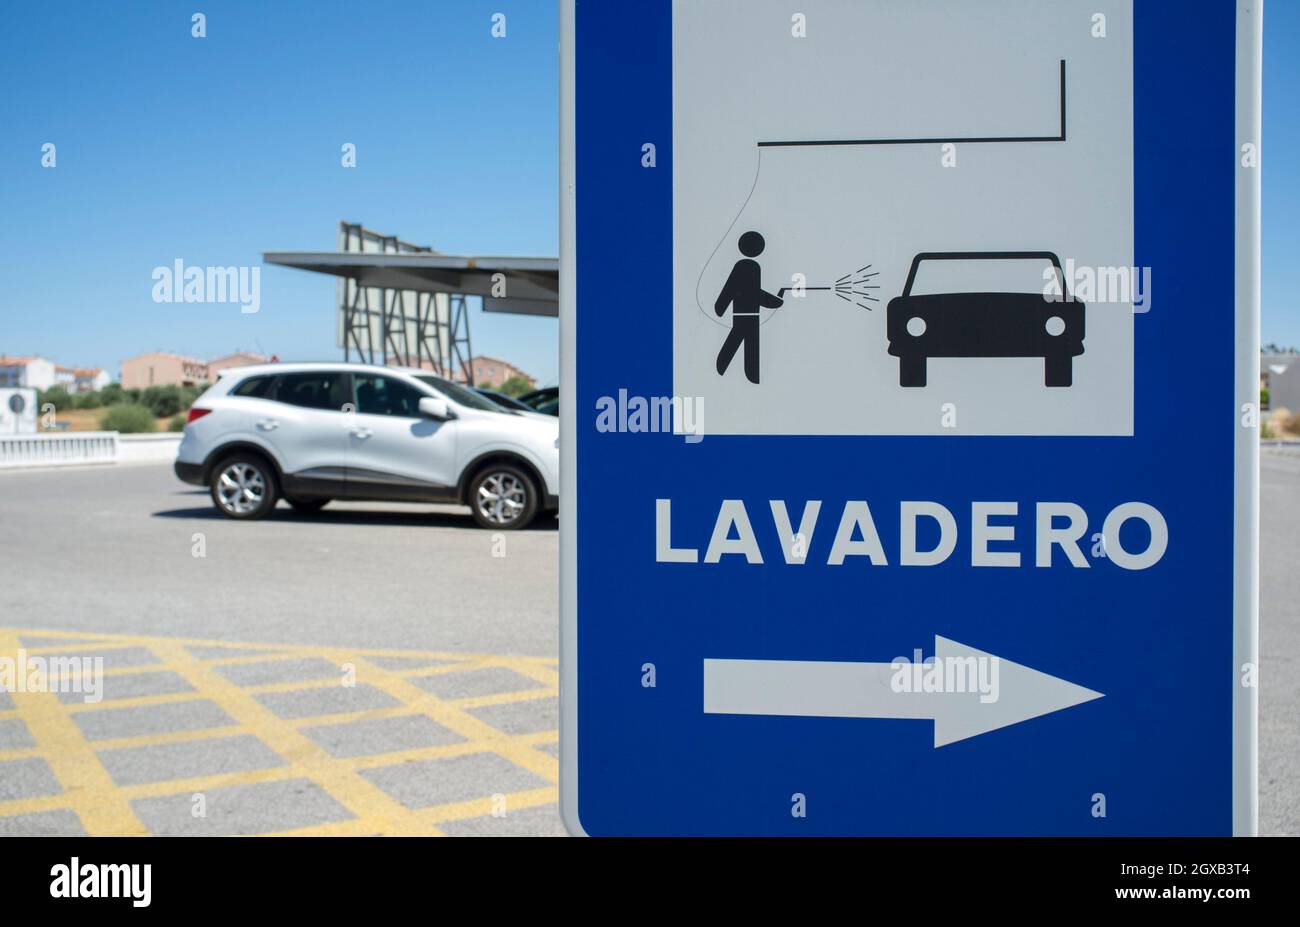 Schild für den Waschbereich. Sport Utility Vehicle im Hintergrund. Spanische Sprache. Stockfoto